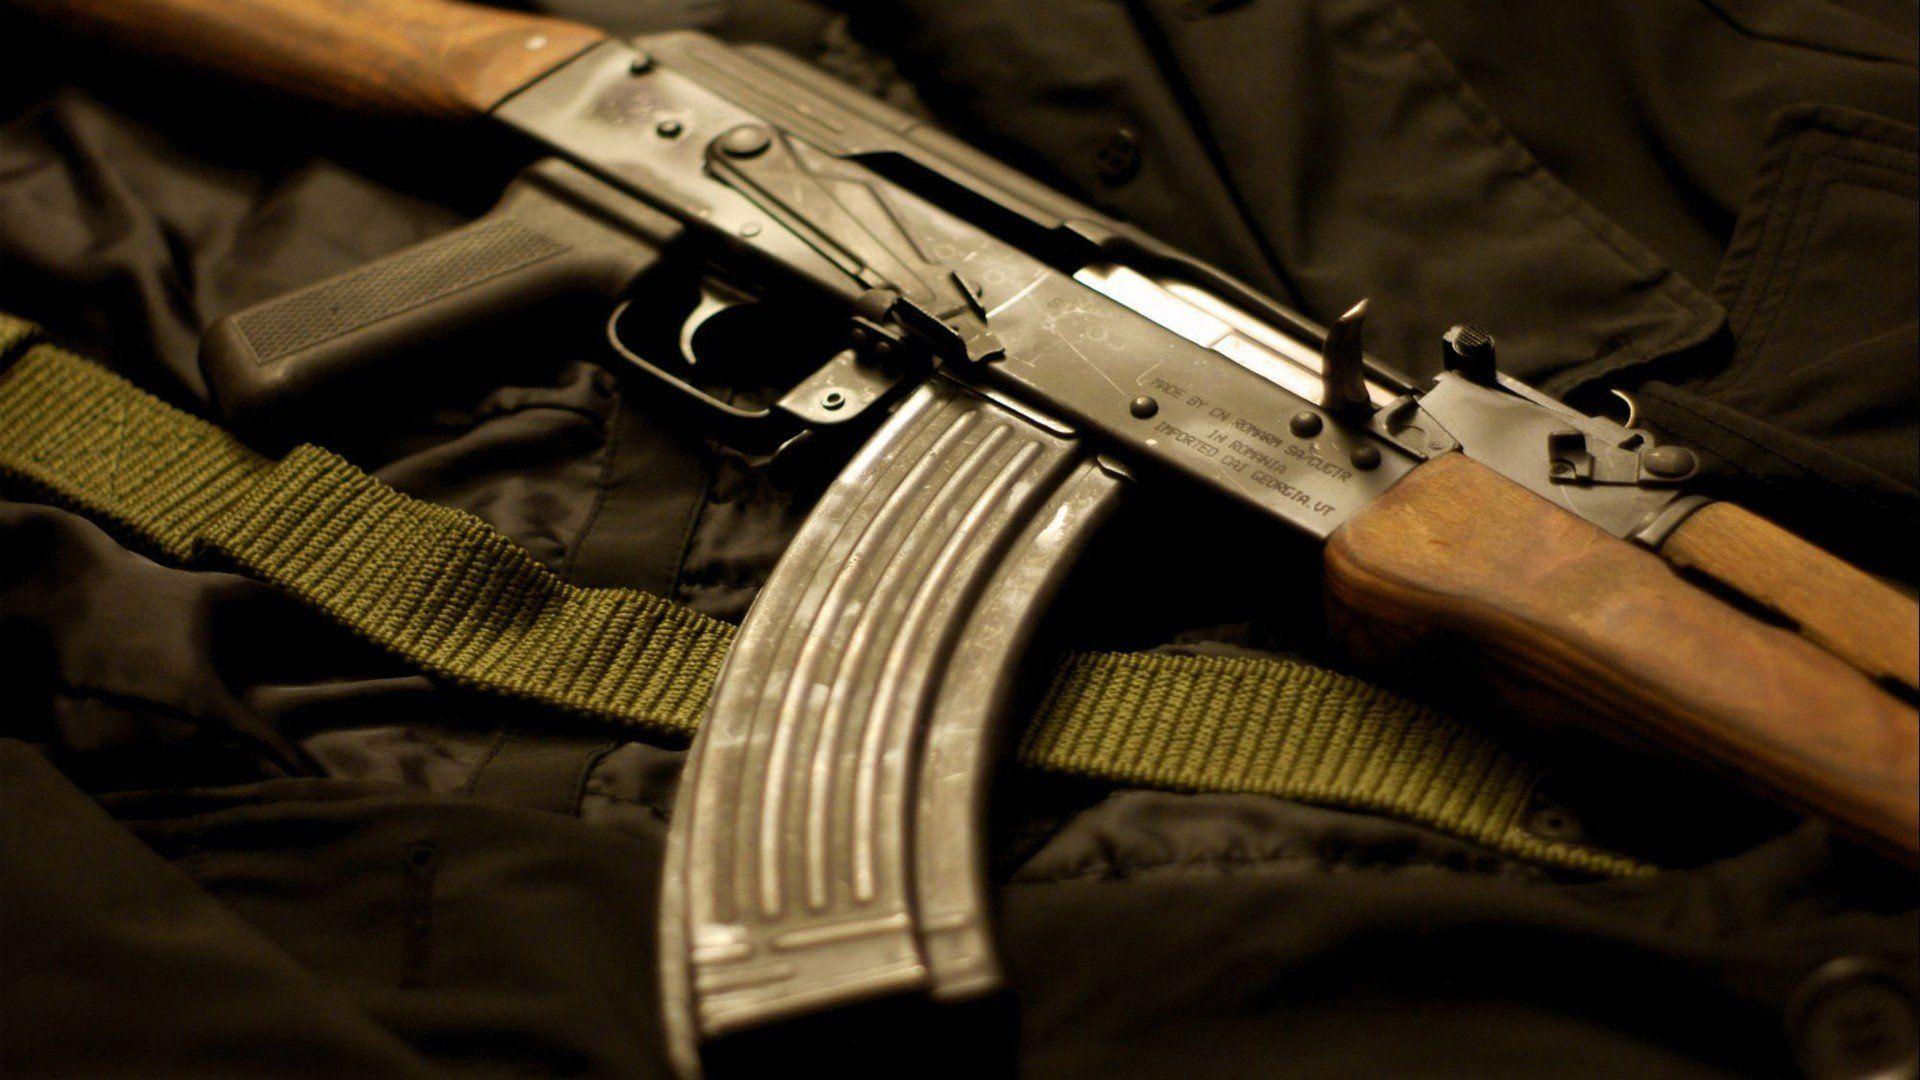 Wrap a Kalashnikov or Saiga Rifle with a GunSkins AK-47 Rifle Skin